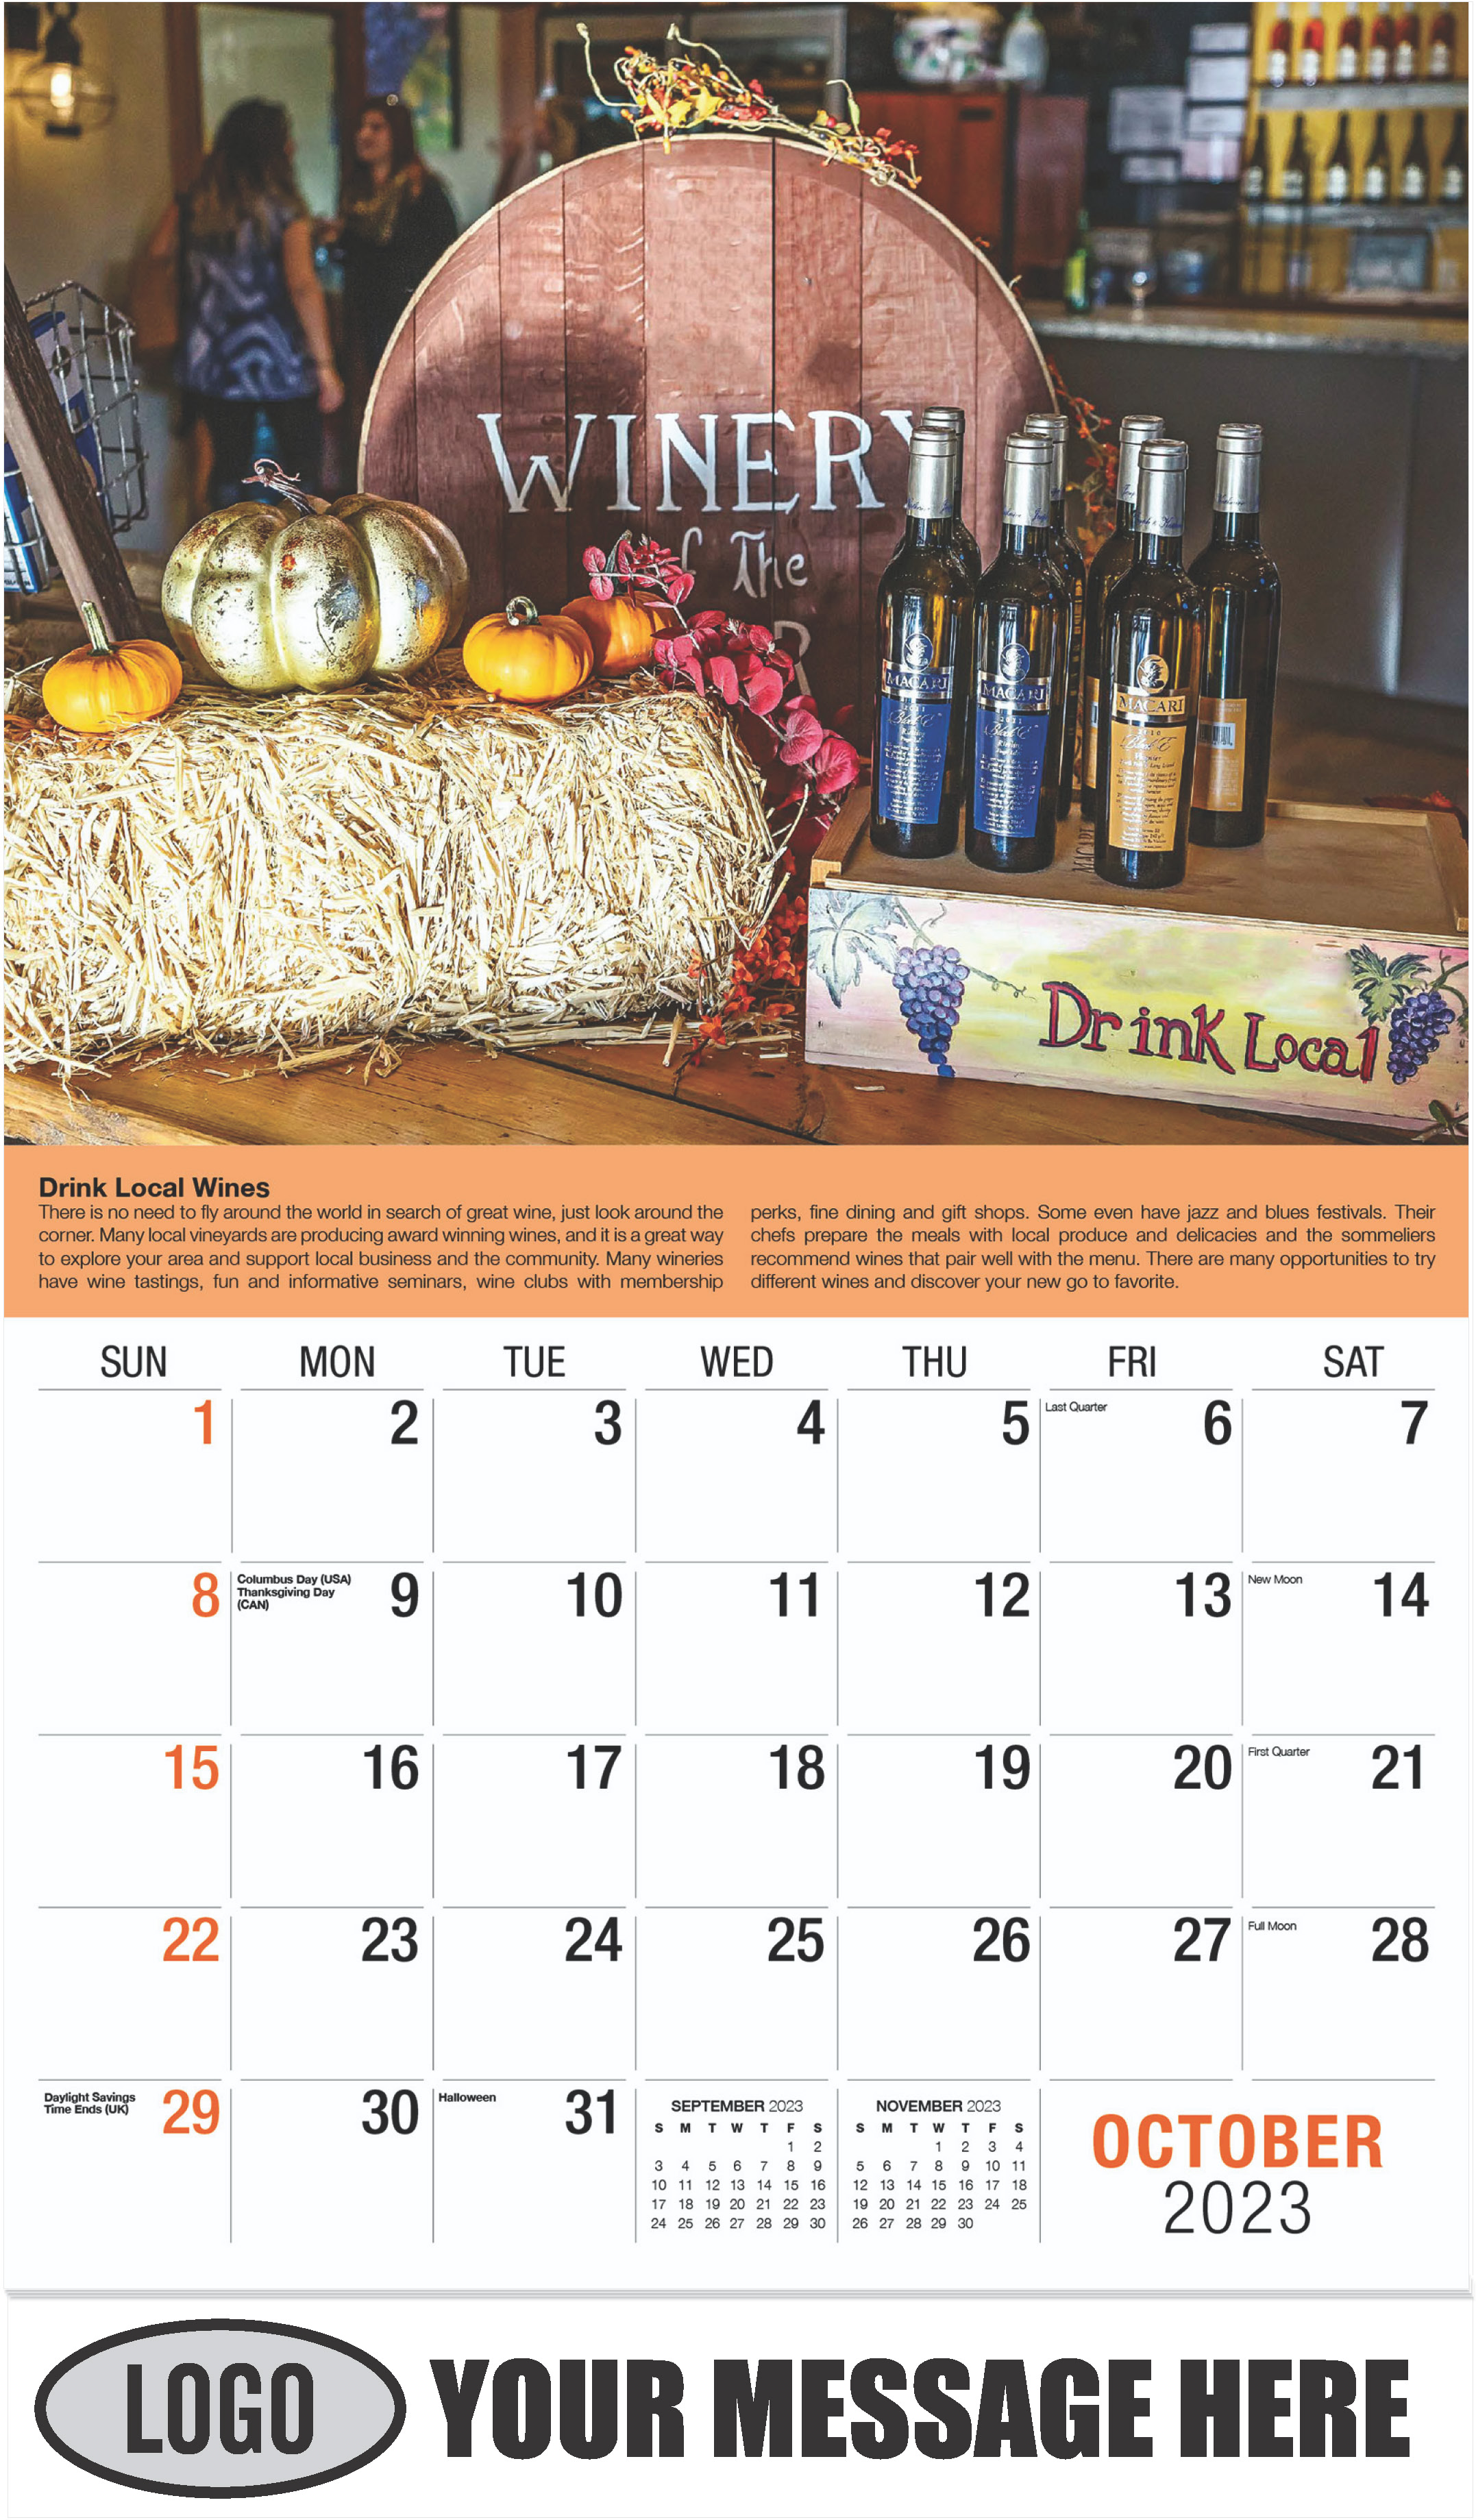 Wine Tips Calendar - October - Vintages 2023 Promotional Calendar